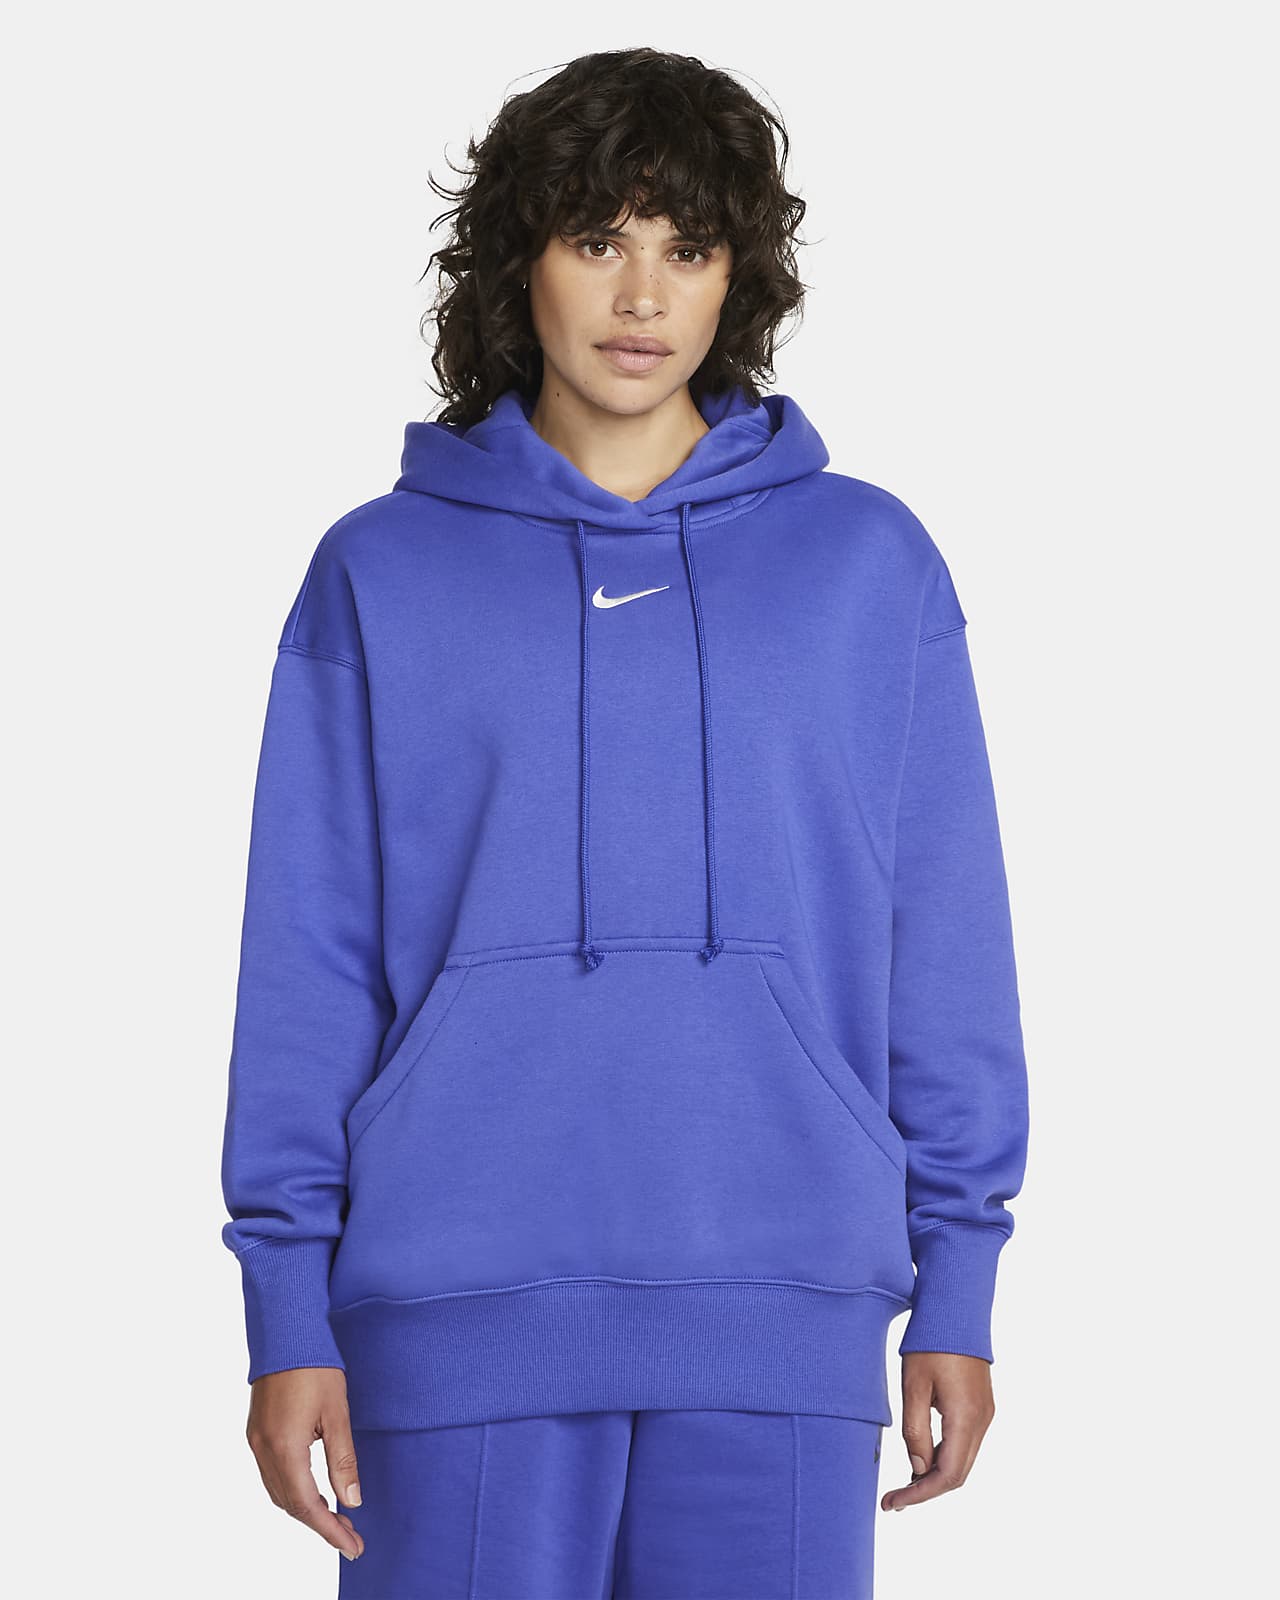 Nike Sportswear Phoenix Fleece Oversized Pullover Hoodie. CA